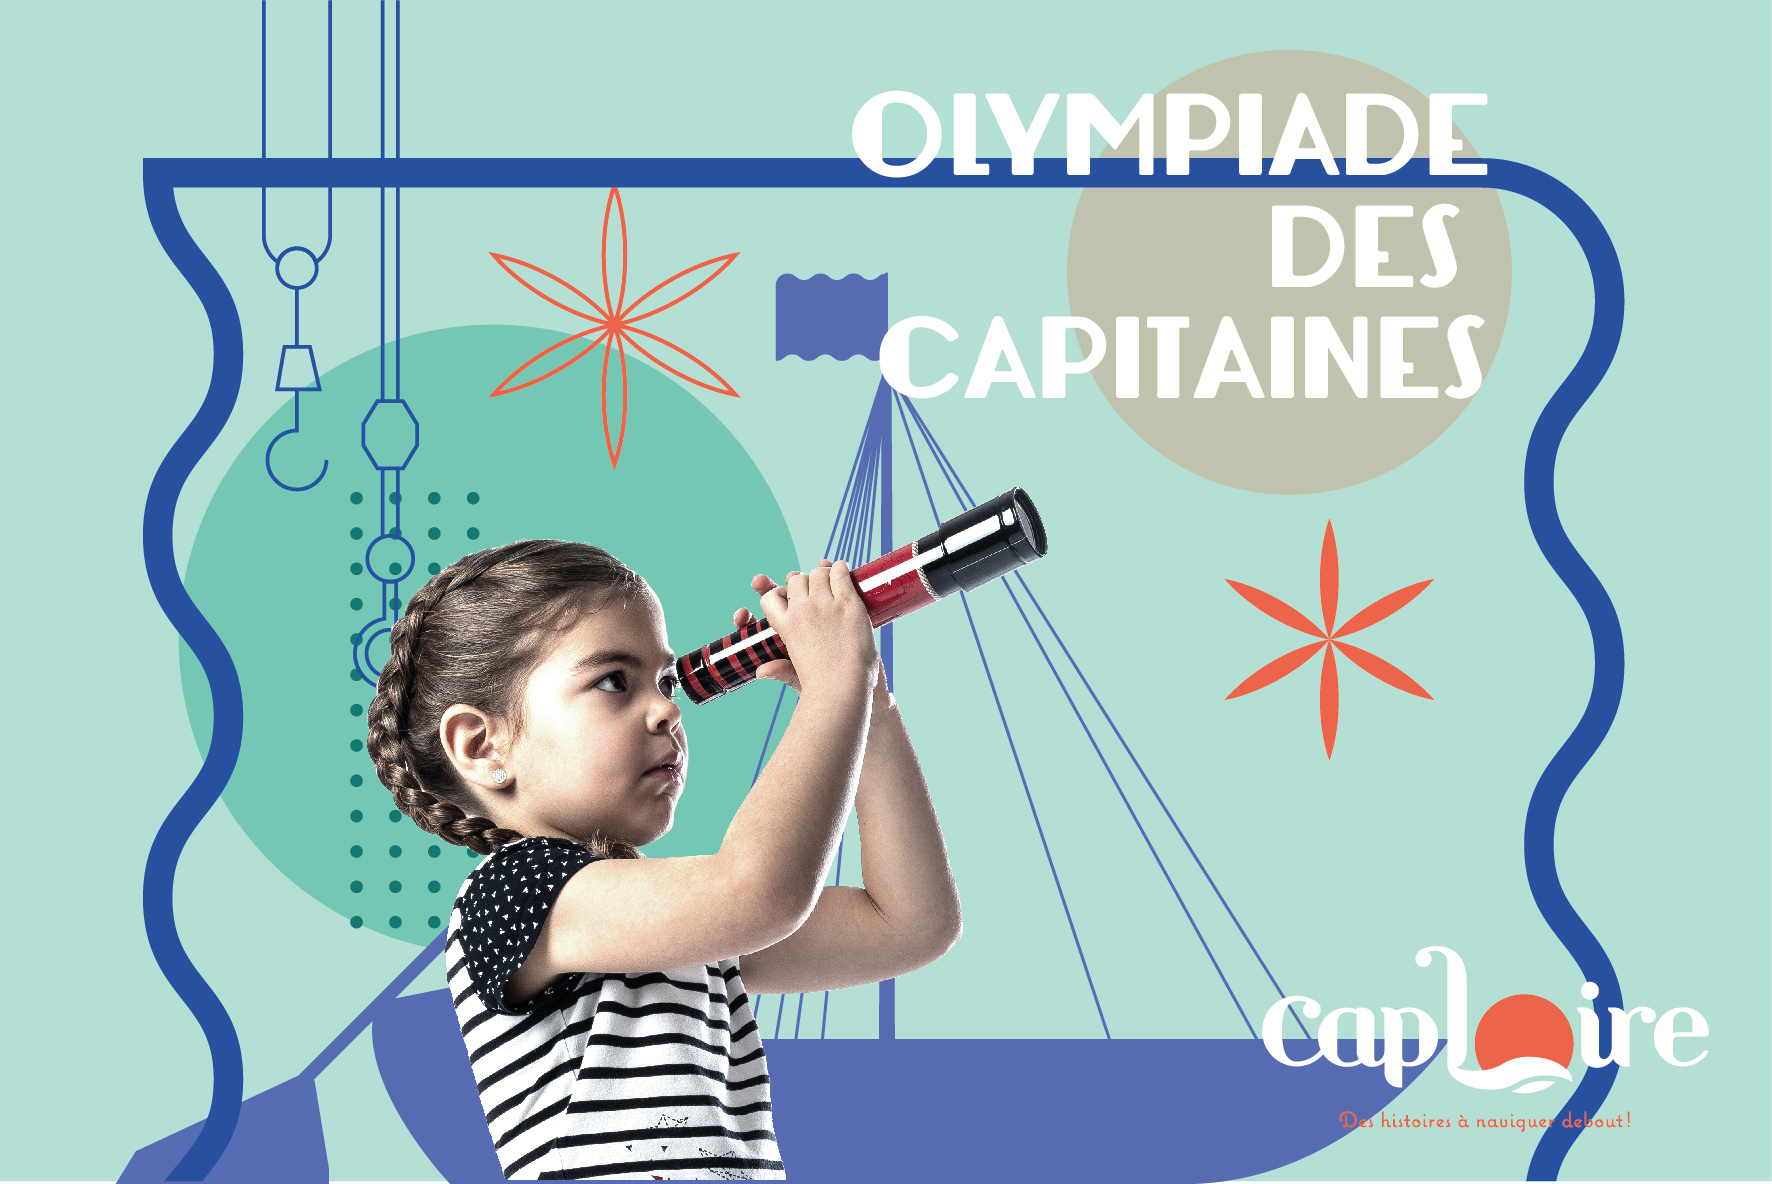 OLYMPIADE DES CAPITAINES À CAP LOIRE©